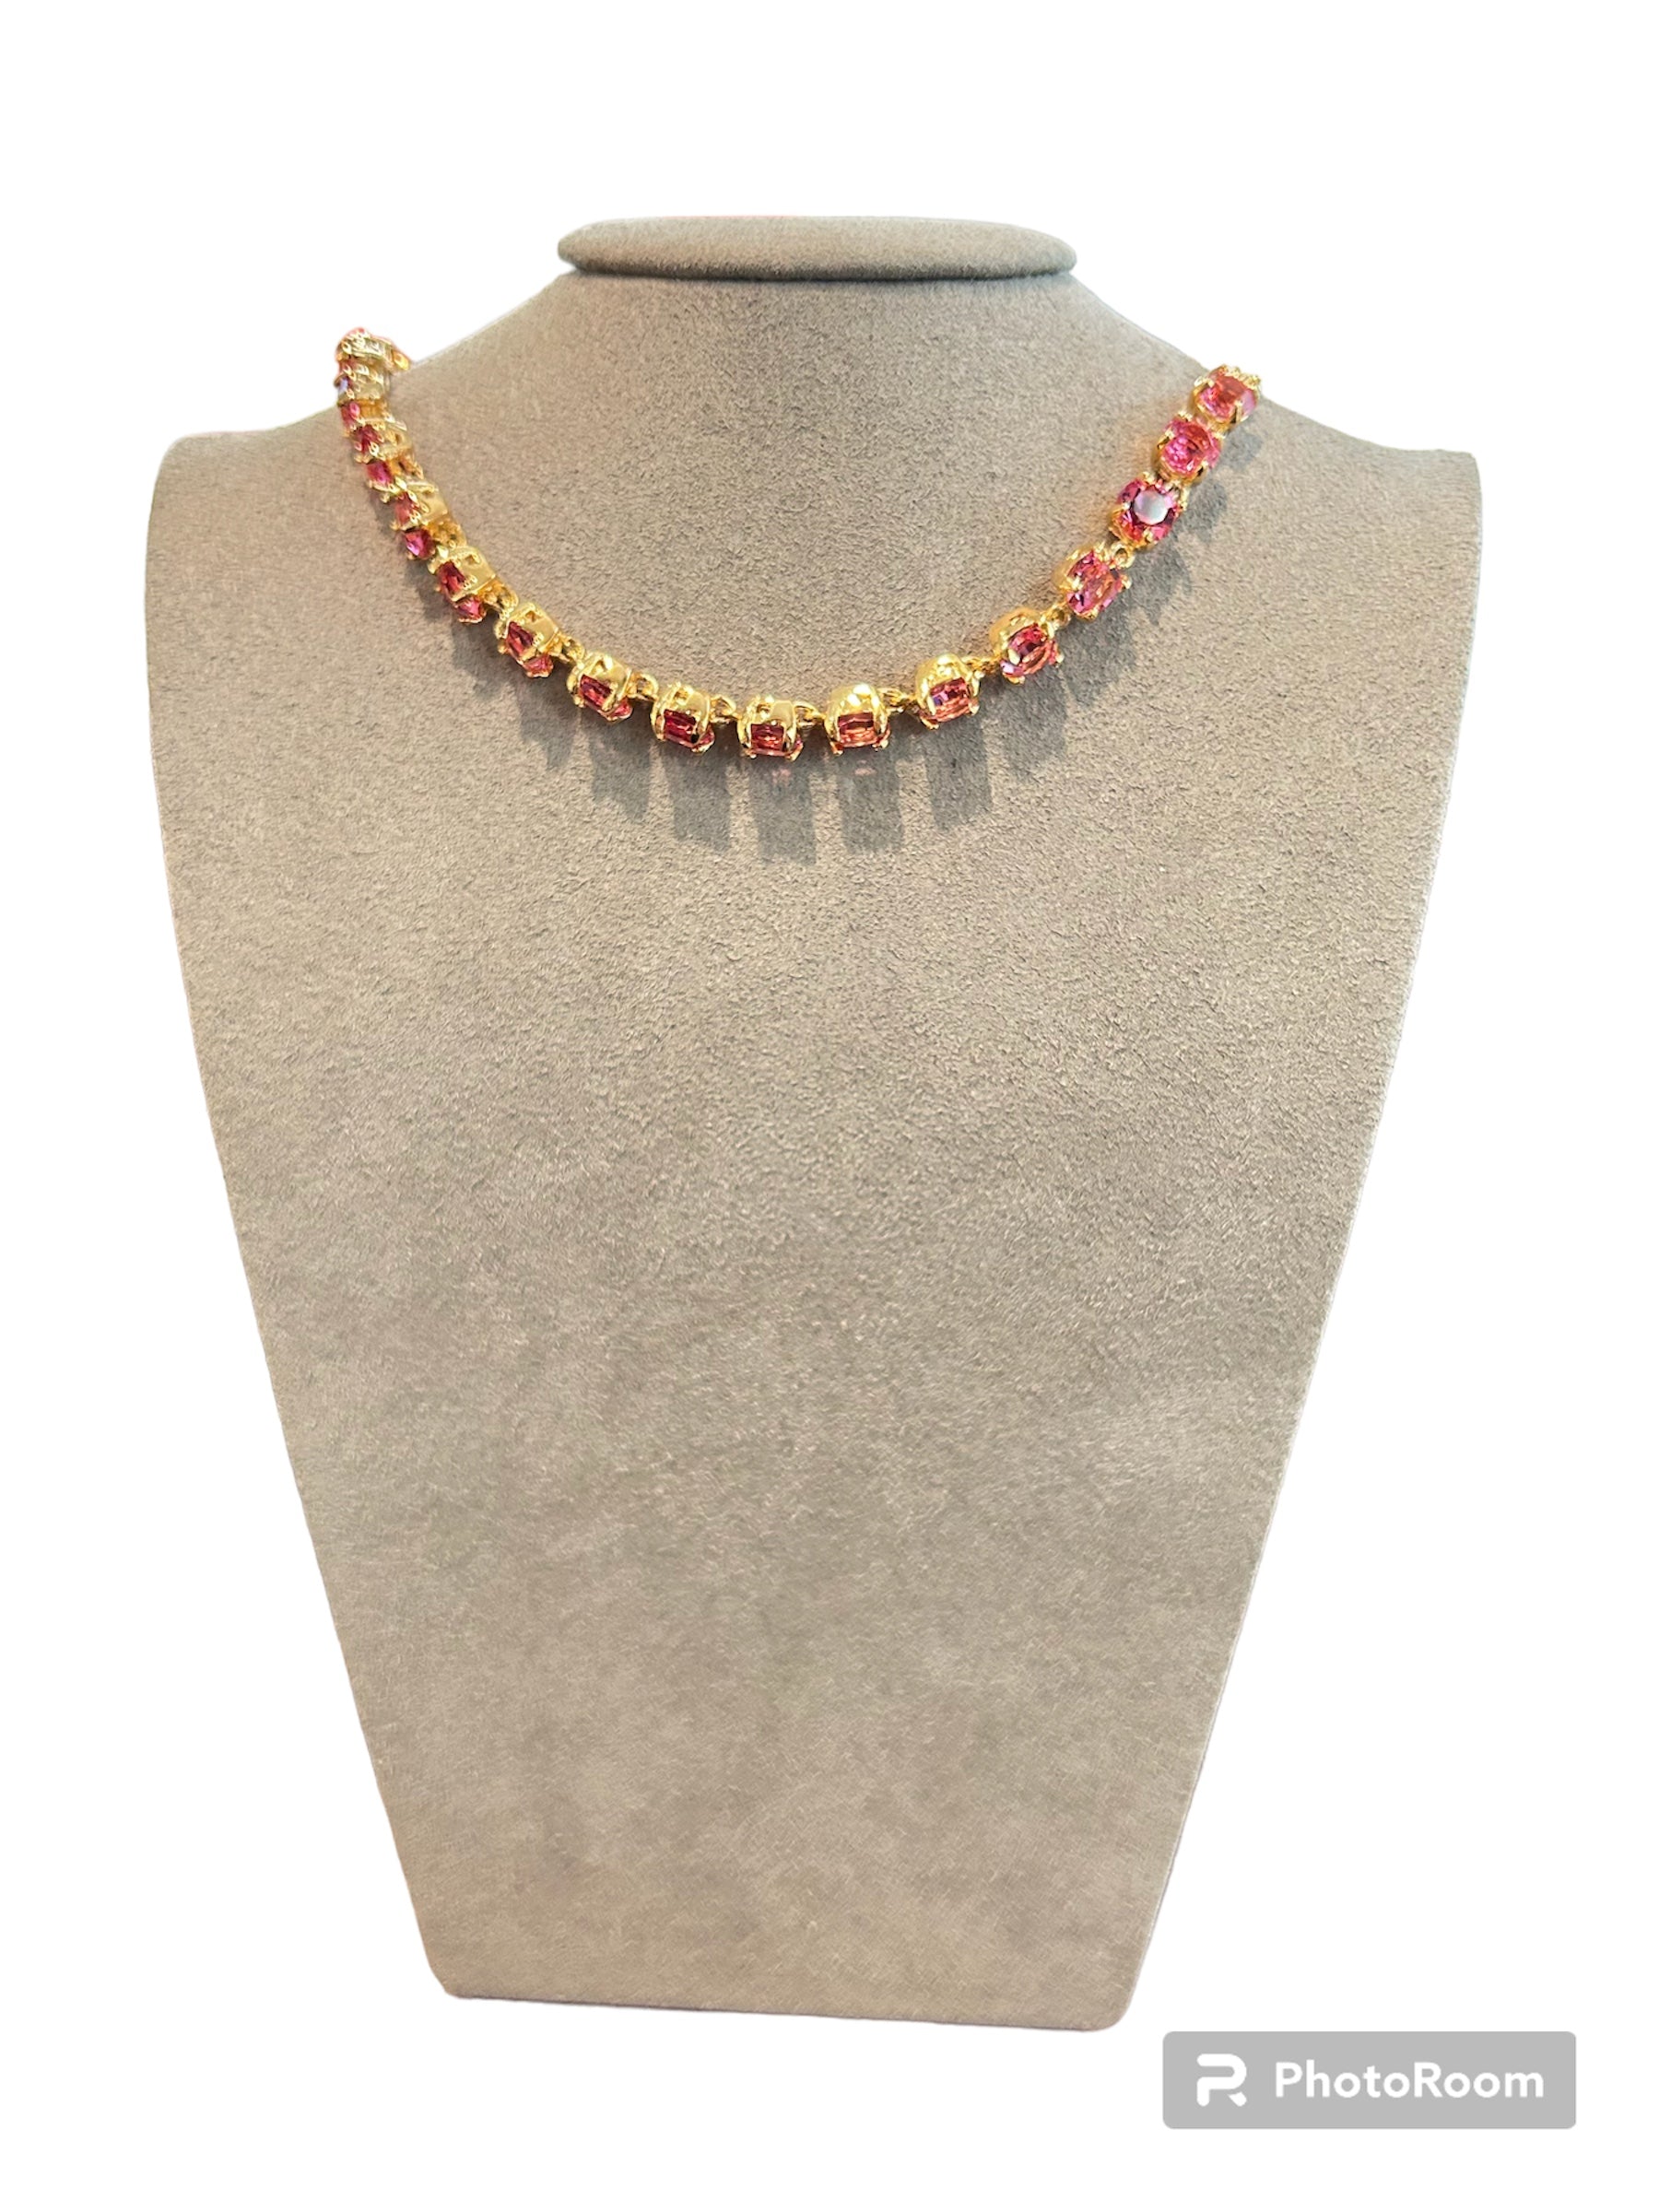 IL Mio Re - Necklace with rose quartz in golden bronze - ILMIORE CL 020 GQ